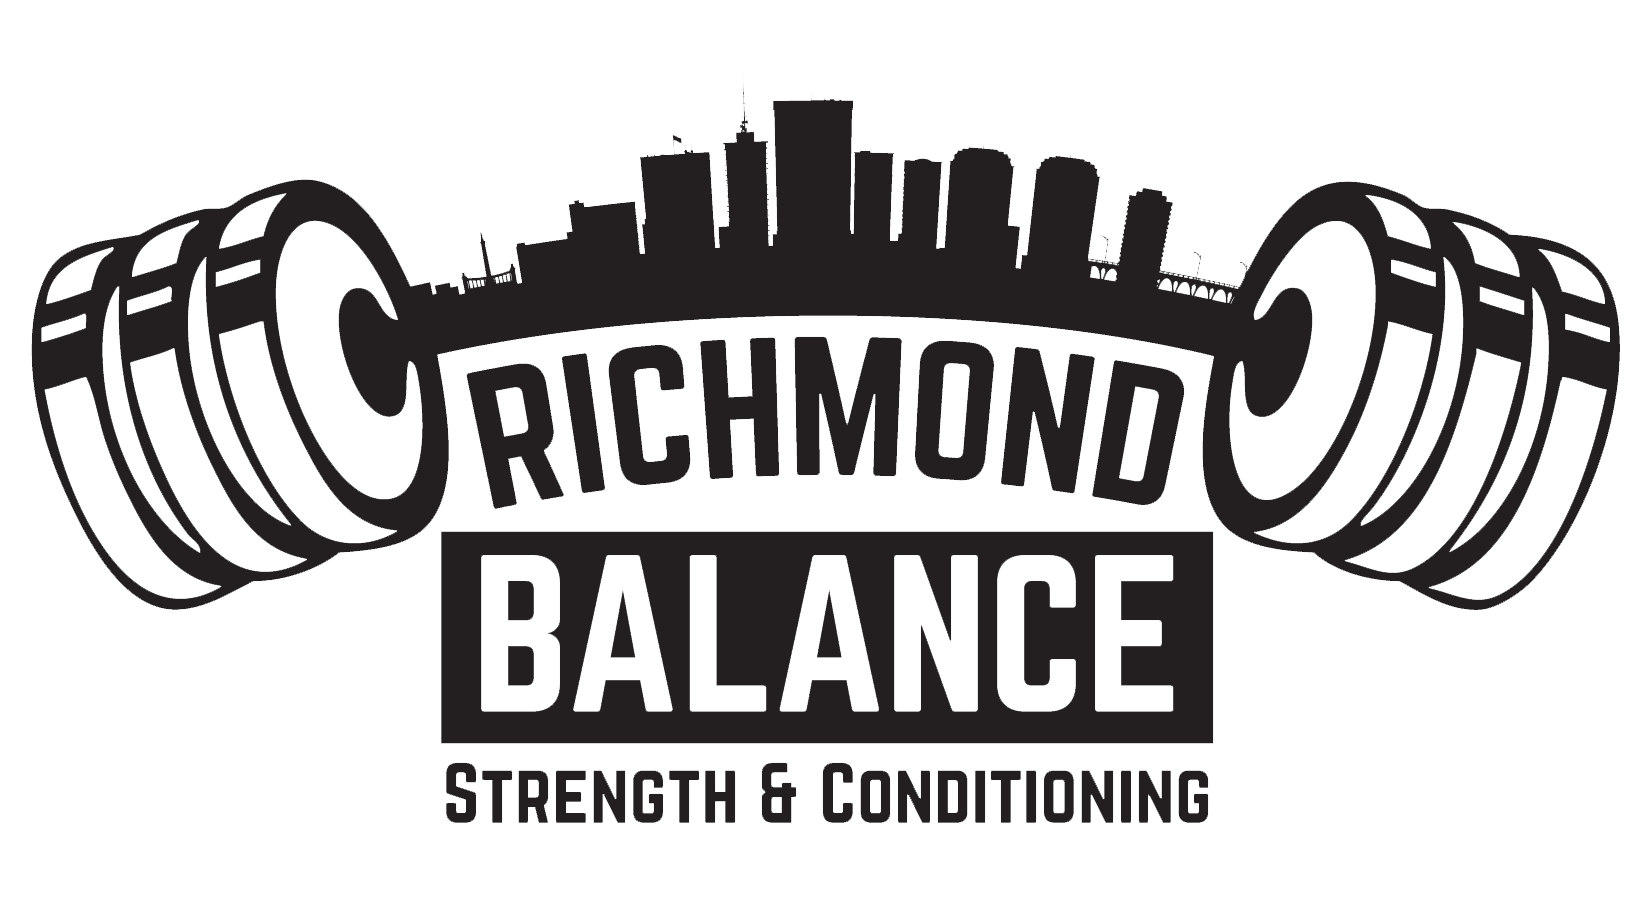 Richmond Logo